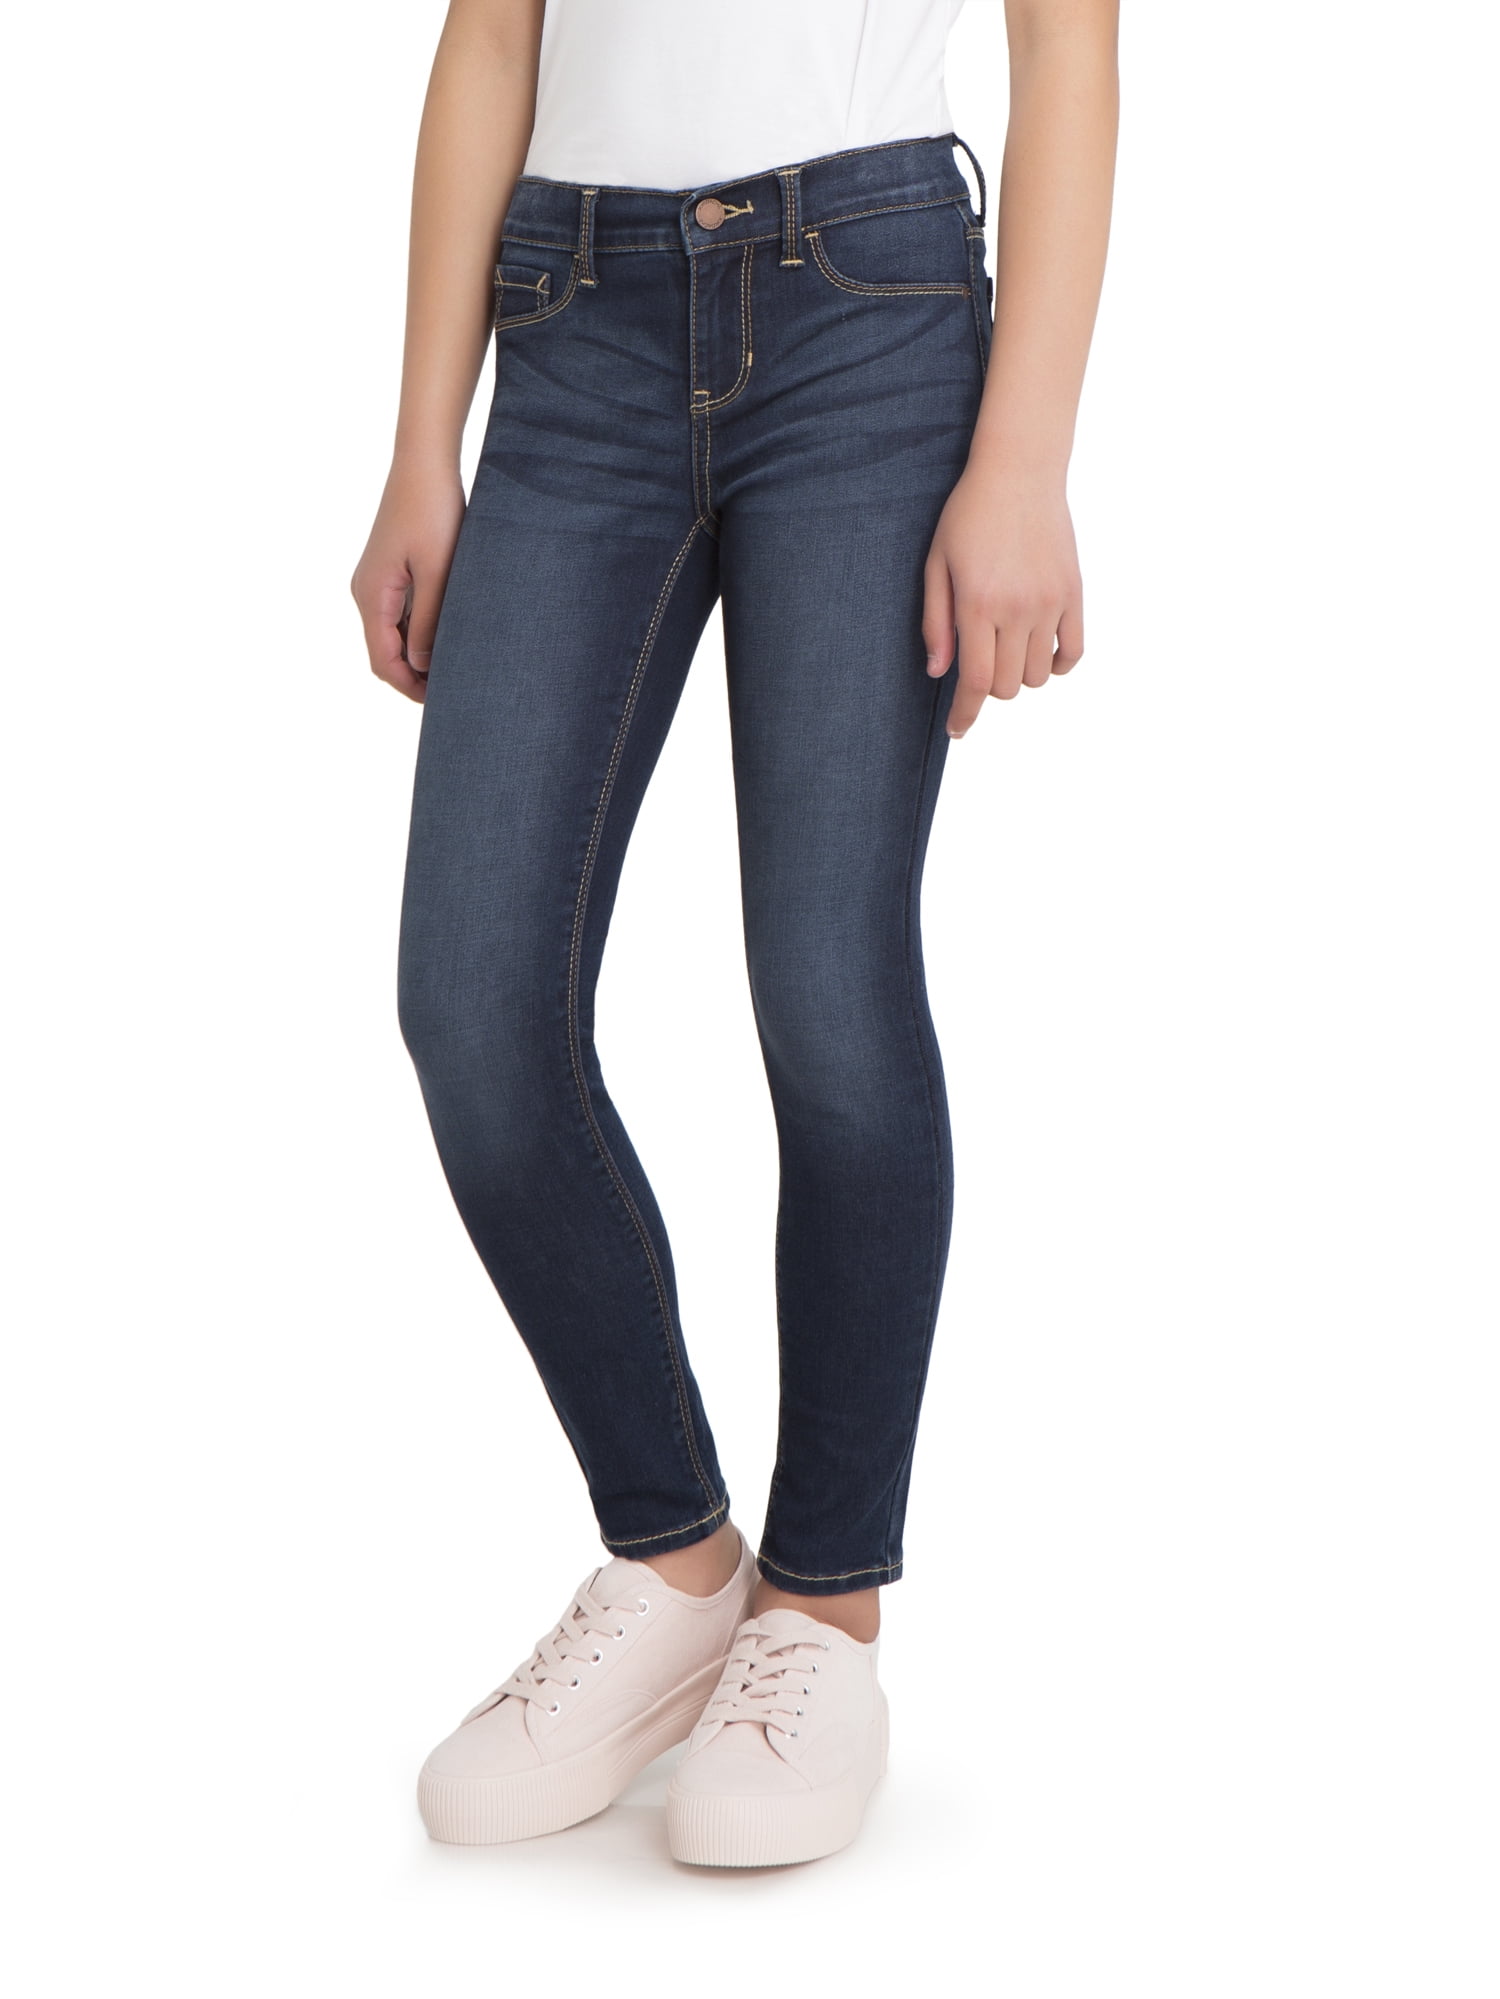 super skinny jeans for girls